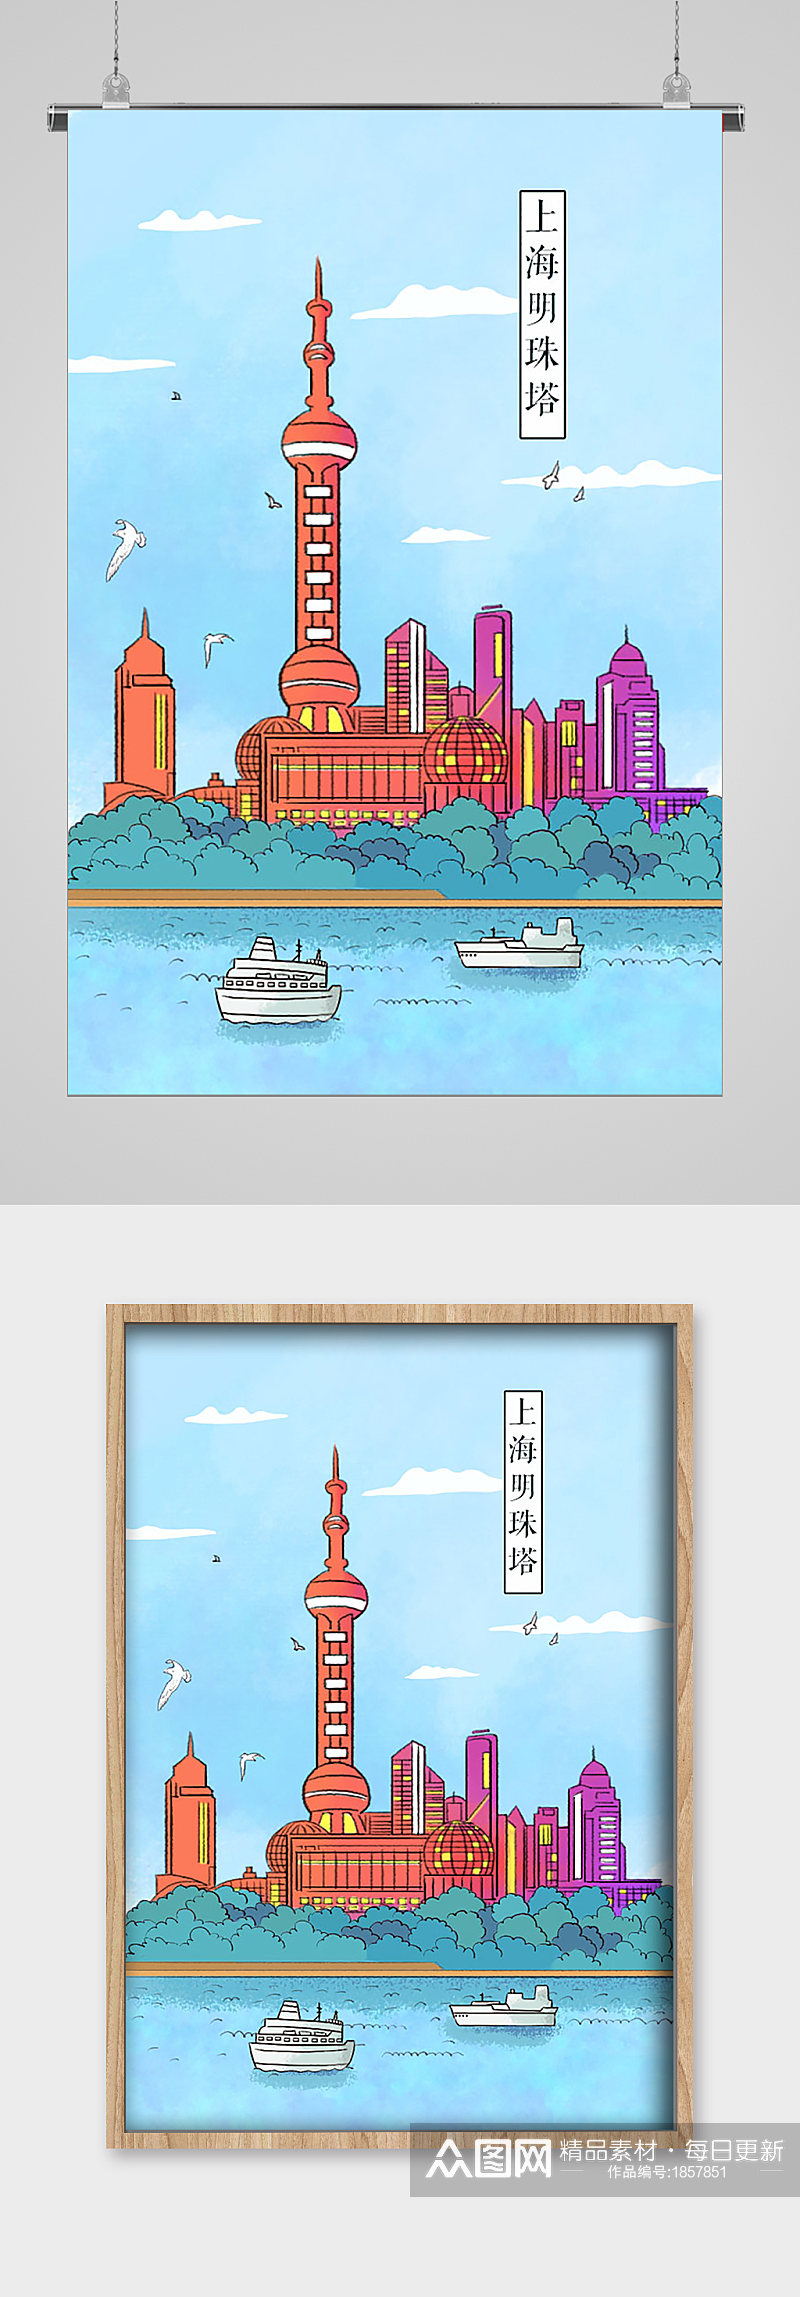 上海明珠塔地方特色建筑插画素材